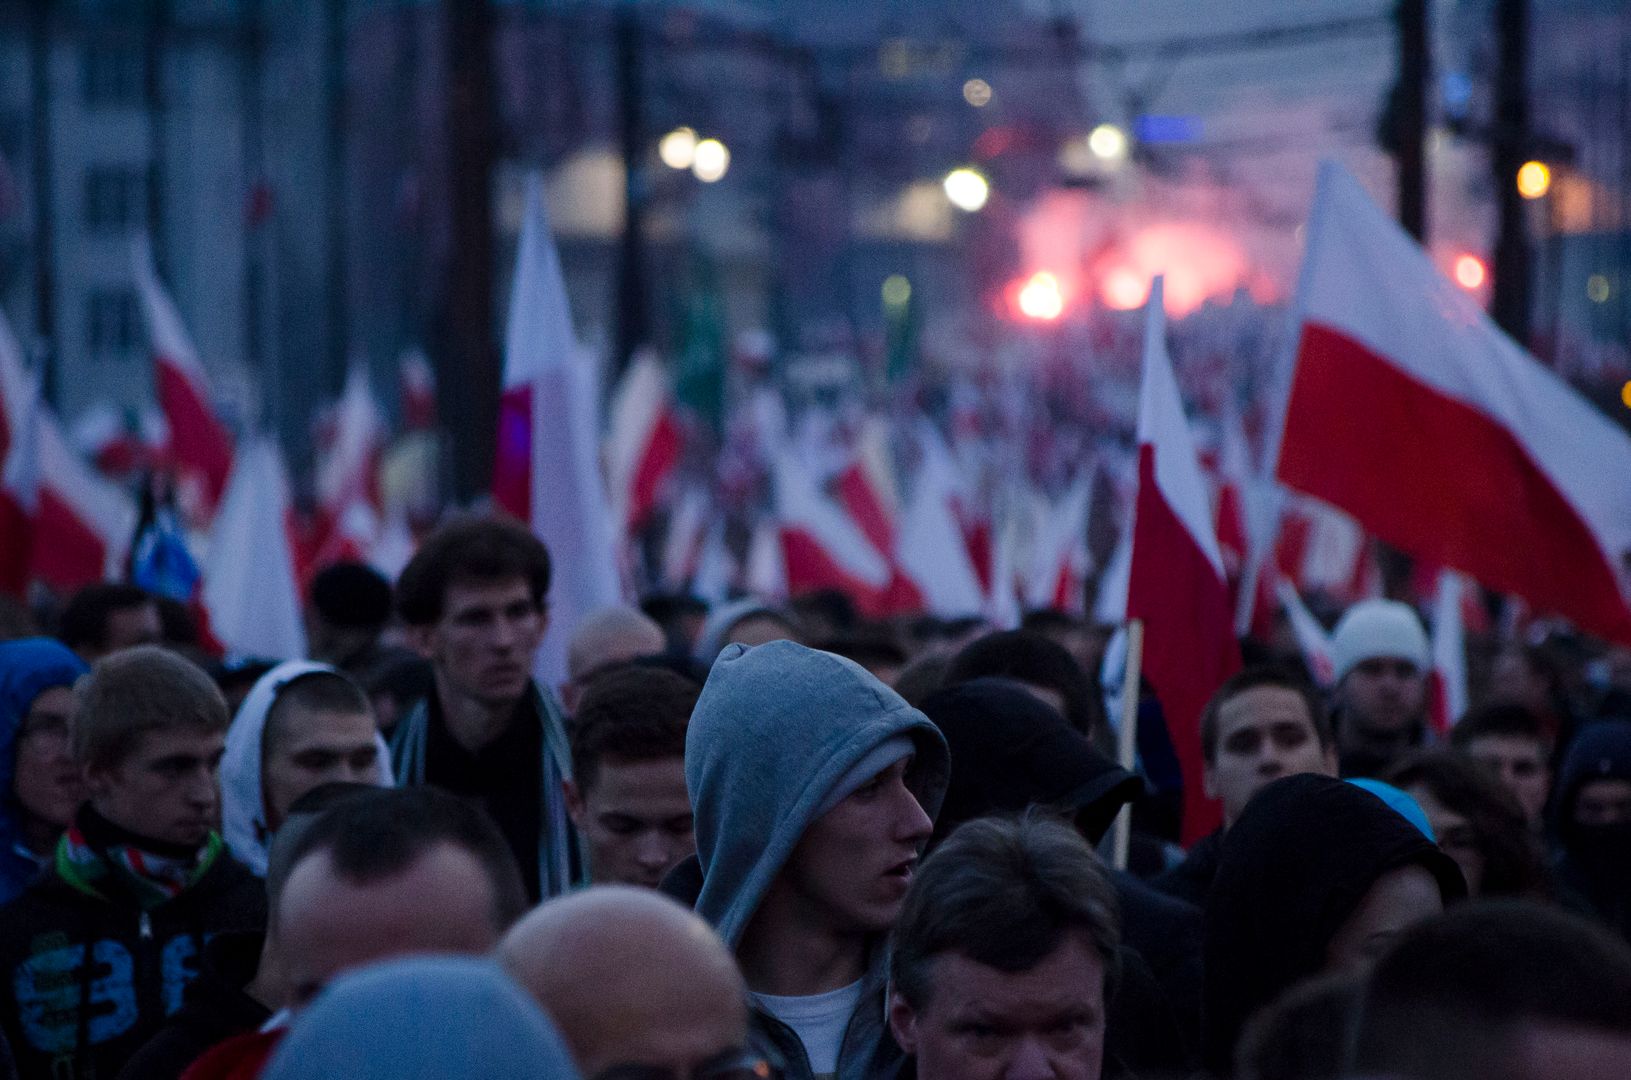 Polskie flagi w filmie o neonazistach wywołały w sieci burzę